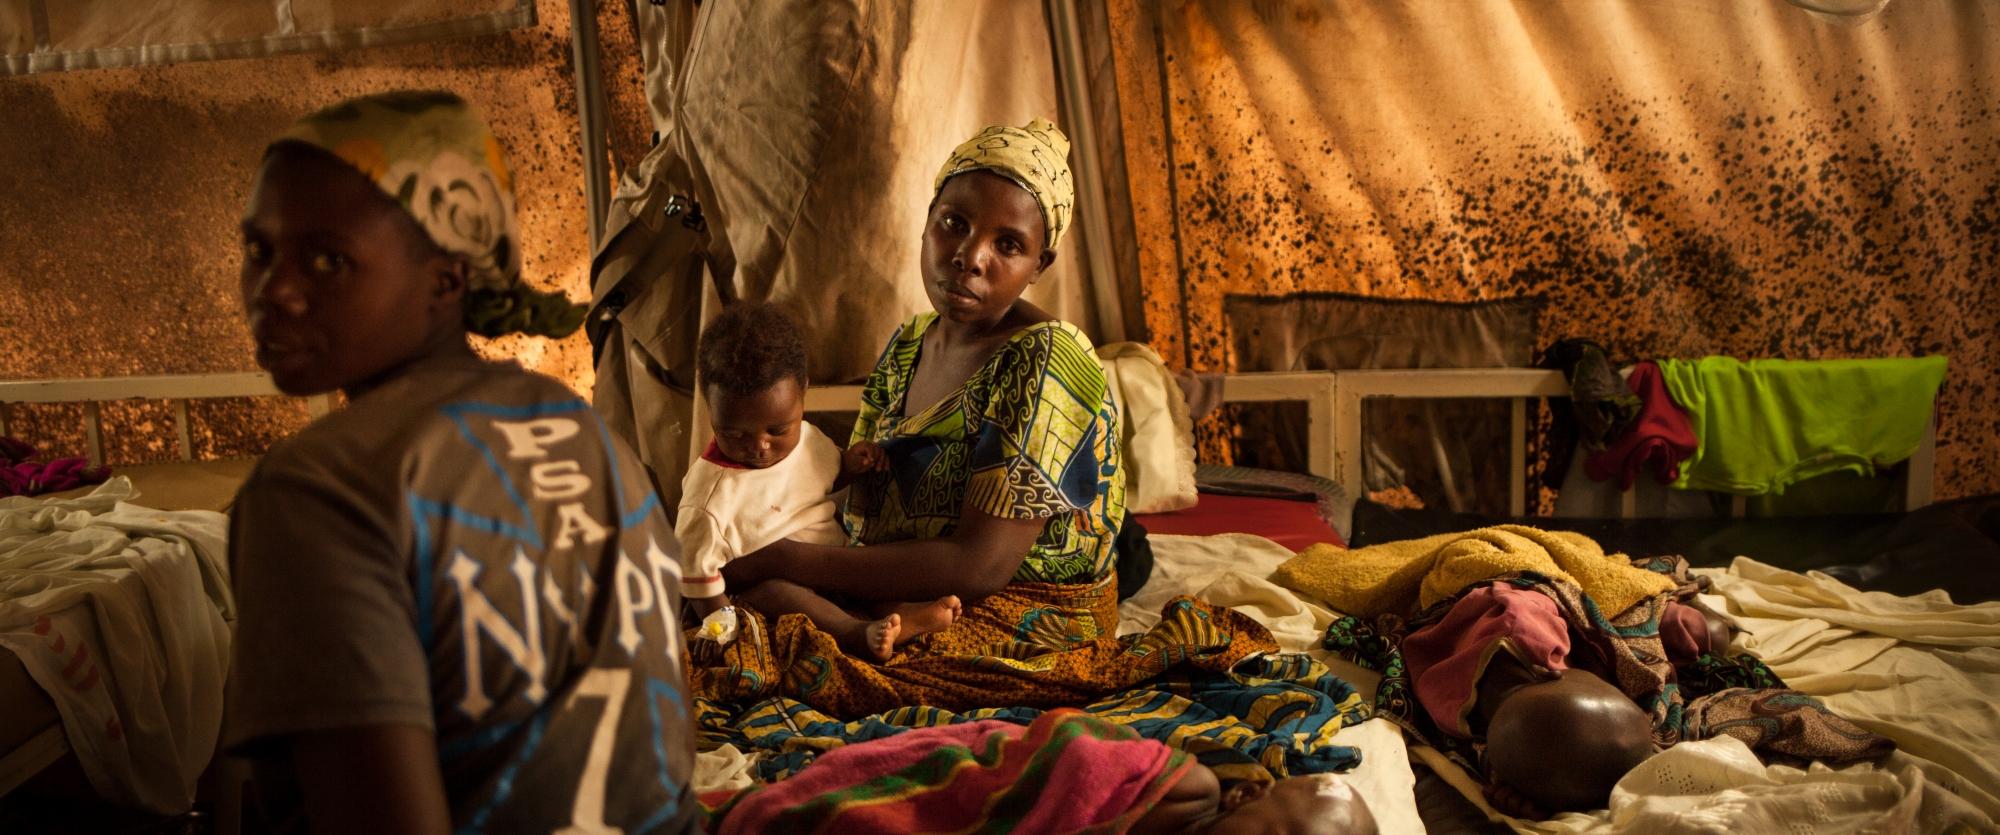 De novembre 2014 à janvier 2015, l’Hôpital Général de Référence de Rutshuru, dans la province du Nord-Kivu, en RDC, a soigné des centaines d’enfants, premières victimes d’un pic de paludisme sans précédent. Il s’agit du pic de paludisme le plus important auquel le personnel congolais ait jamais eu à faire face, à la fois en termes de gravité, mais aussi de nombre des cas et de durée du pic.